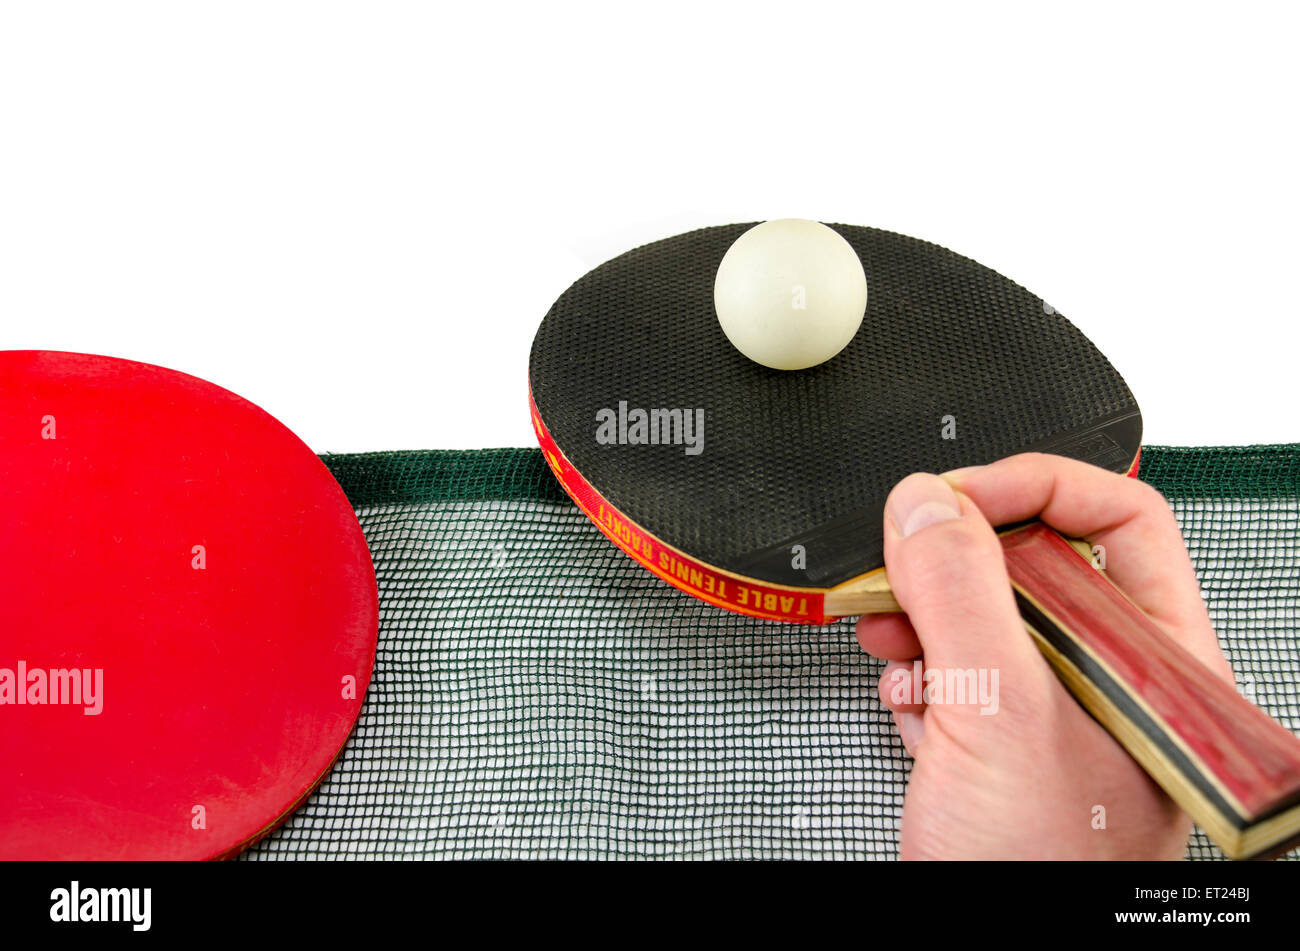 Hombre mano sosteniendo una raqueta de ping pong y una pelota de tenis de mesa por encima de una red, aislado en blanco Foto de stock